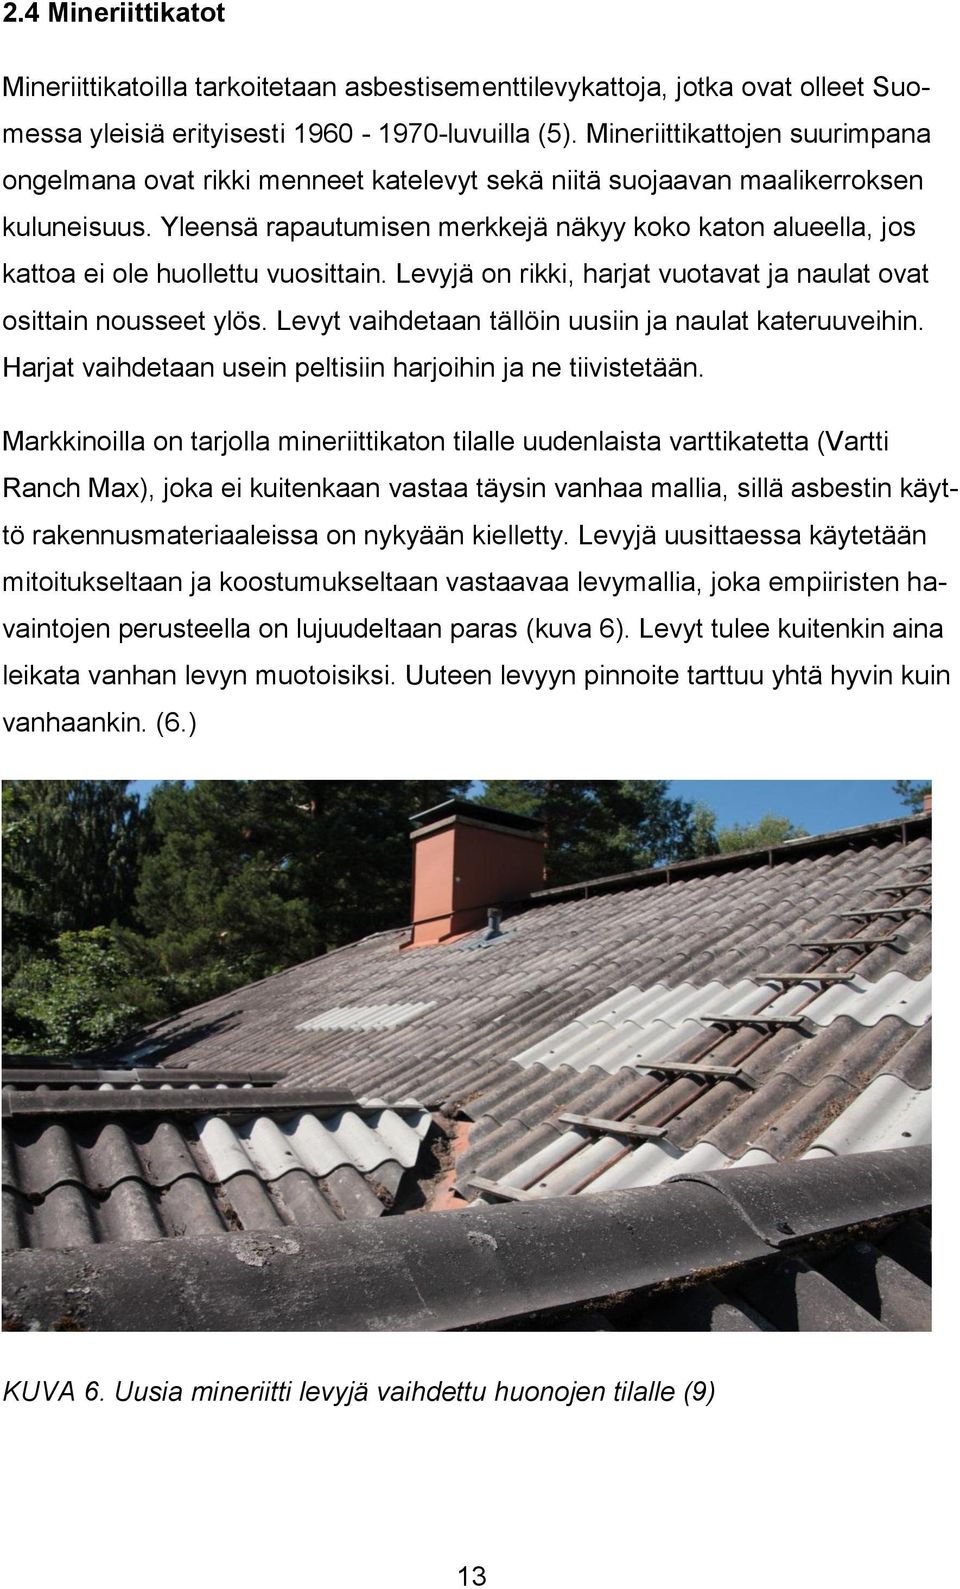 Yleensä rapautumisen merkkejä näkyy koko katon alueella, jos kattoa ei ole huollettu vuosittain. Levyjä on rikki, harjat vuotavat ja naulat ovat osittain nousseet ylös.